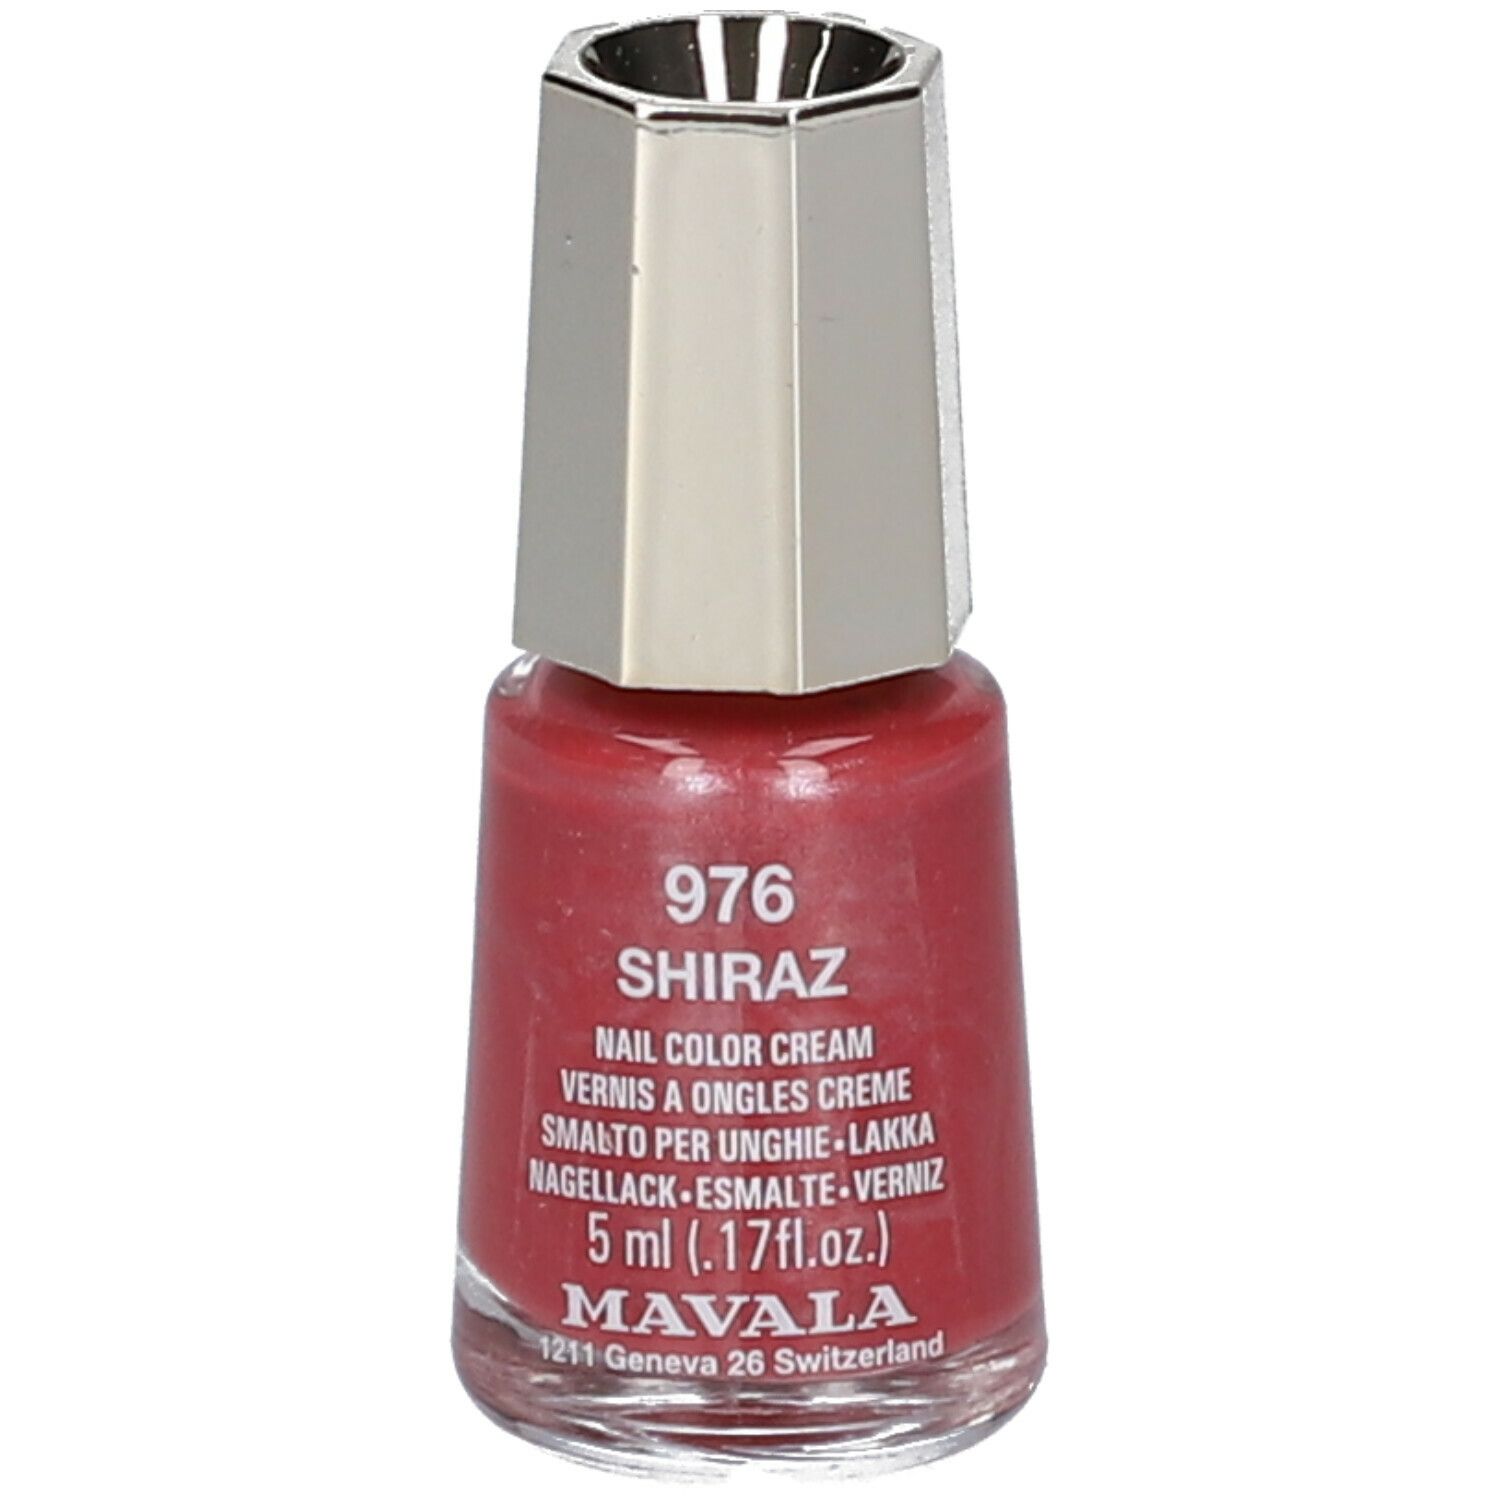 Mavala Mini Color vernis à ongles crème - Shiraz 976